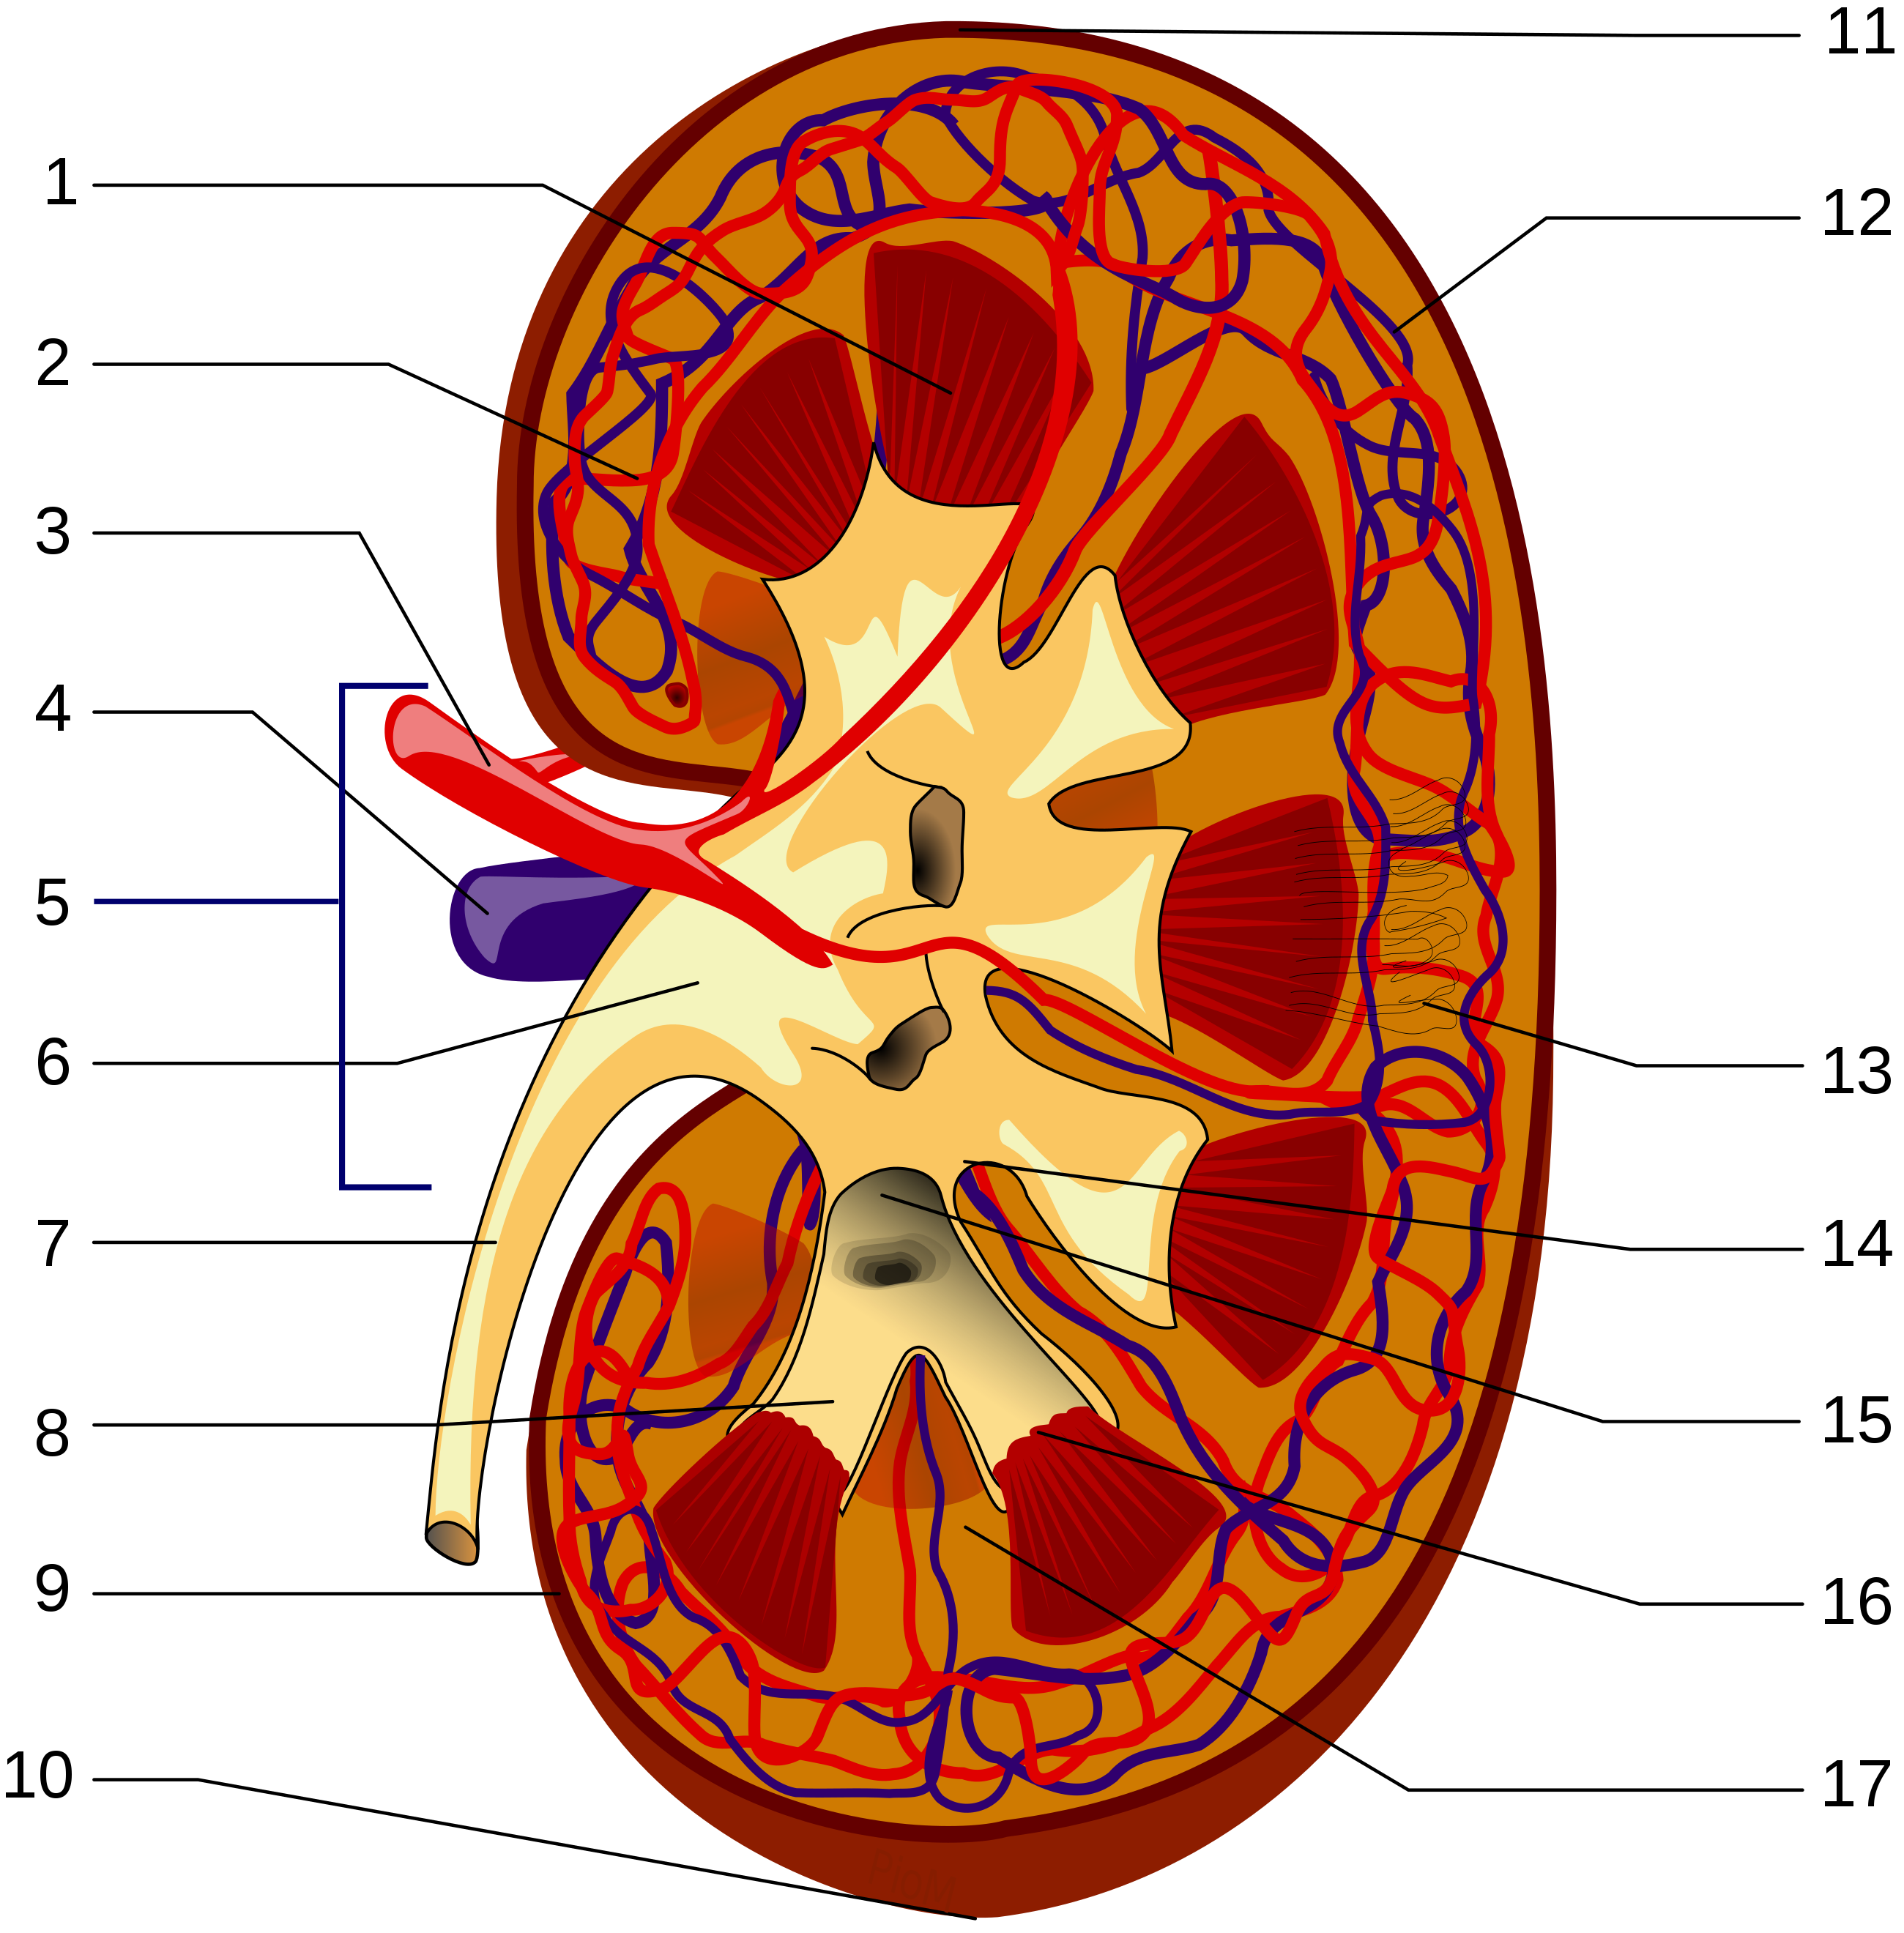 kidney clipart reins